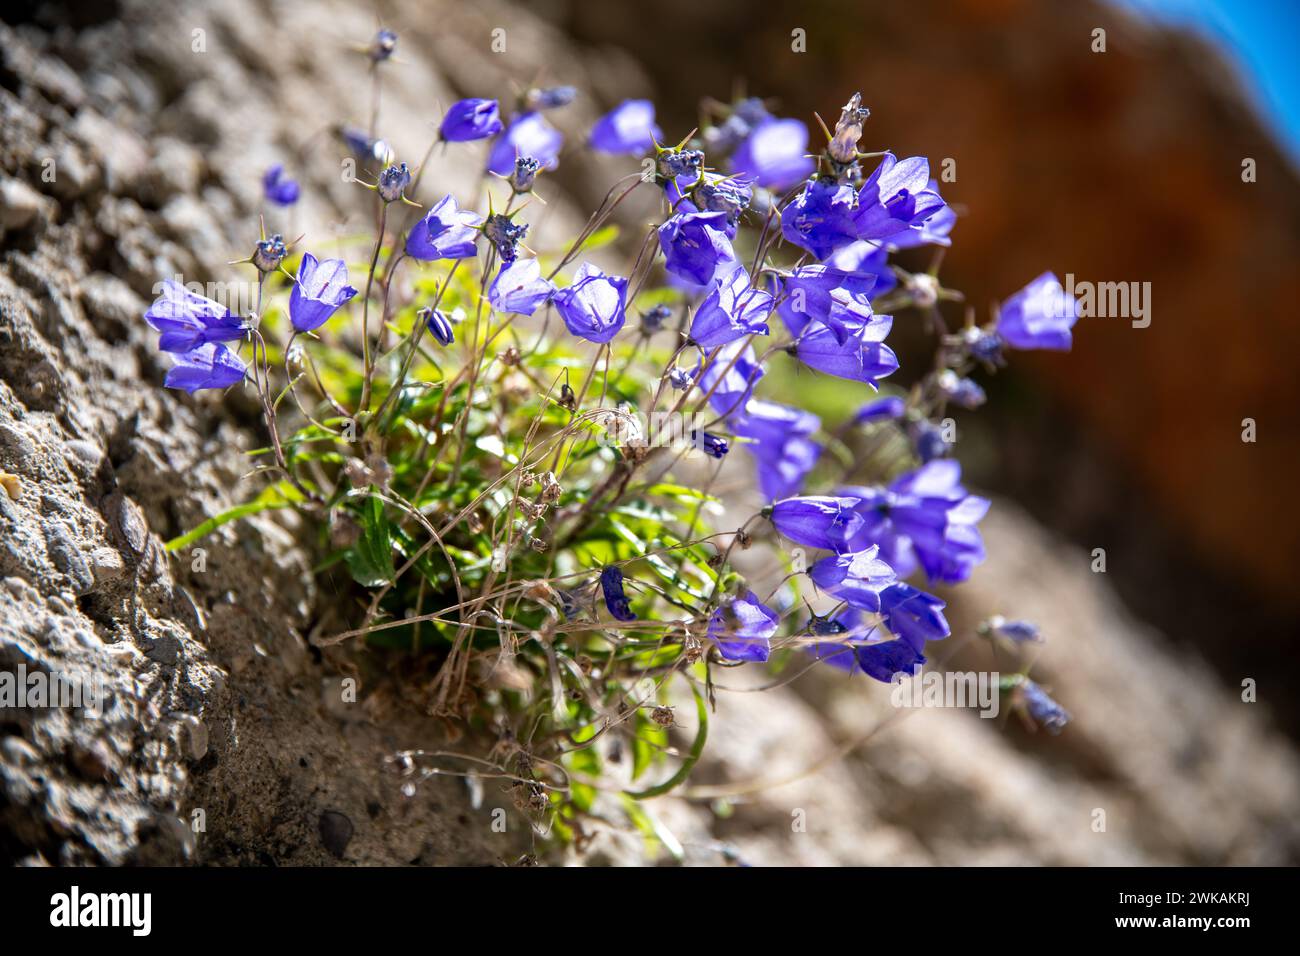 Violette oder violette Glocken wachsen aus einer rauen Steinmauer. Zusammen mit anderen grünen Pflanzen werden sie von der Sonne beleuchtet und strahlen durch Stockfoto